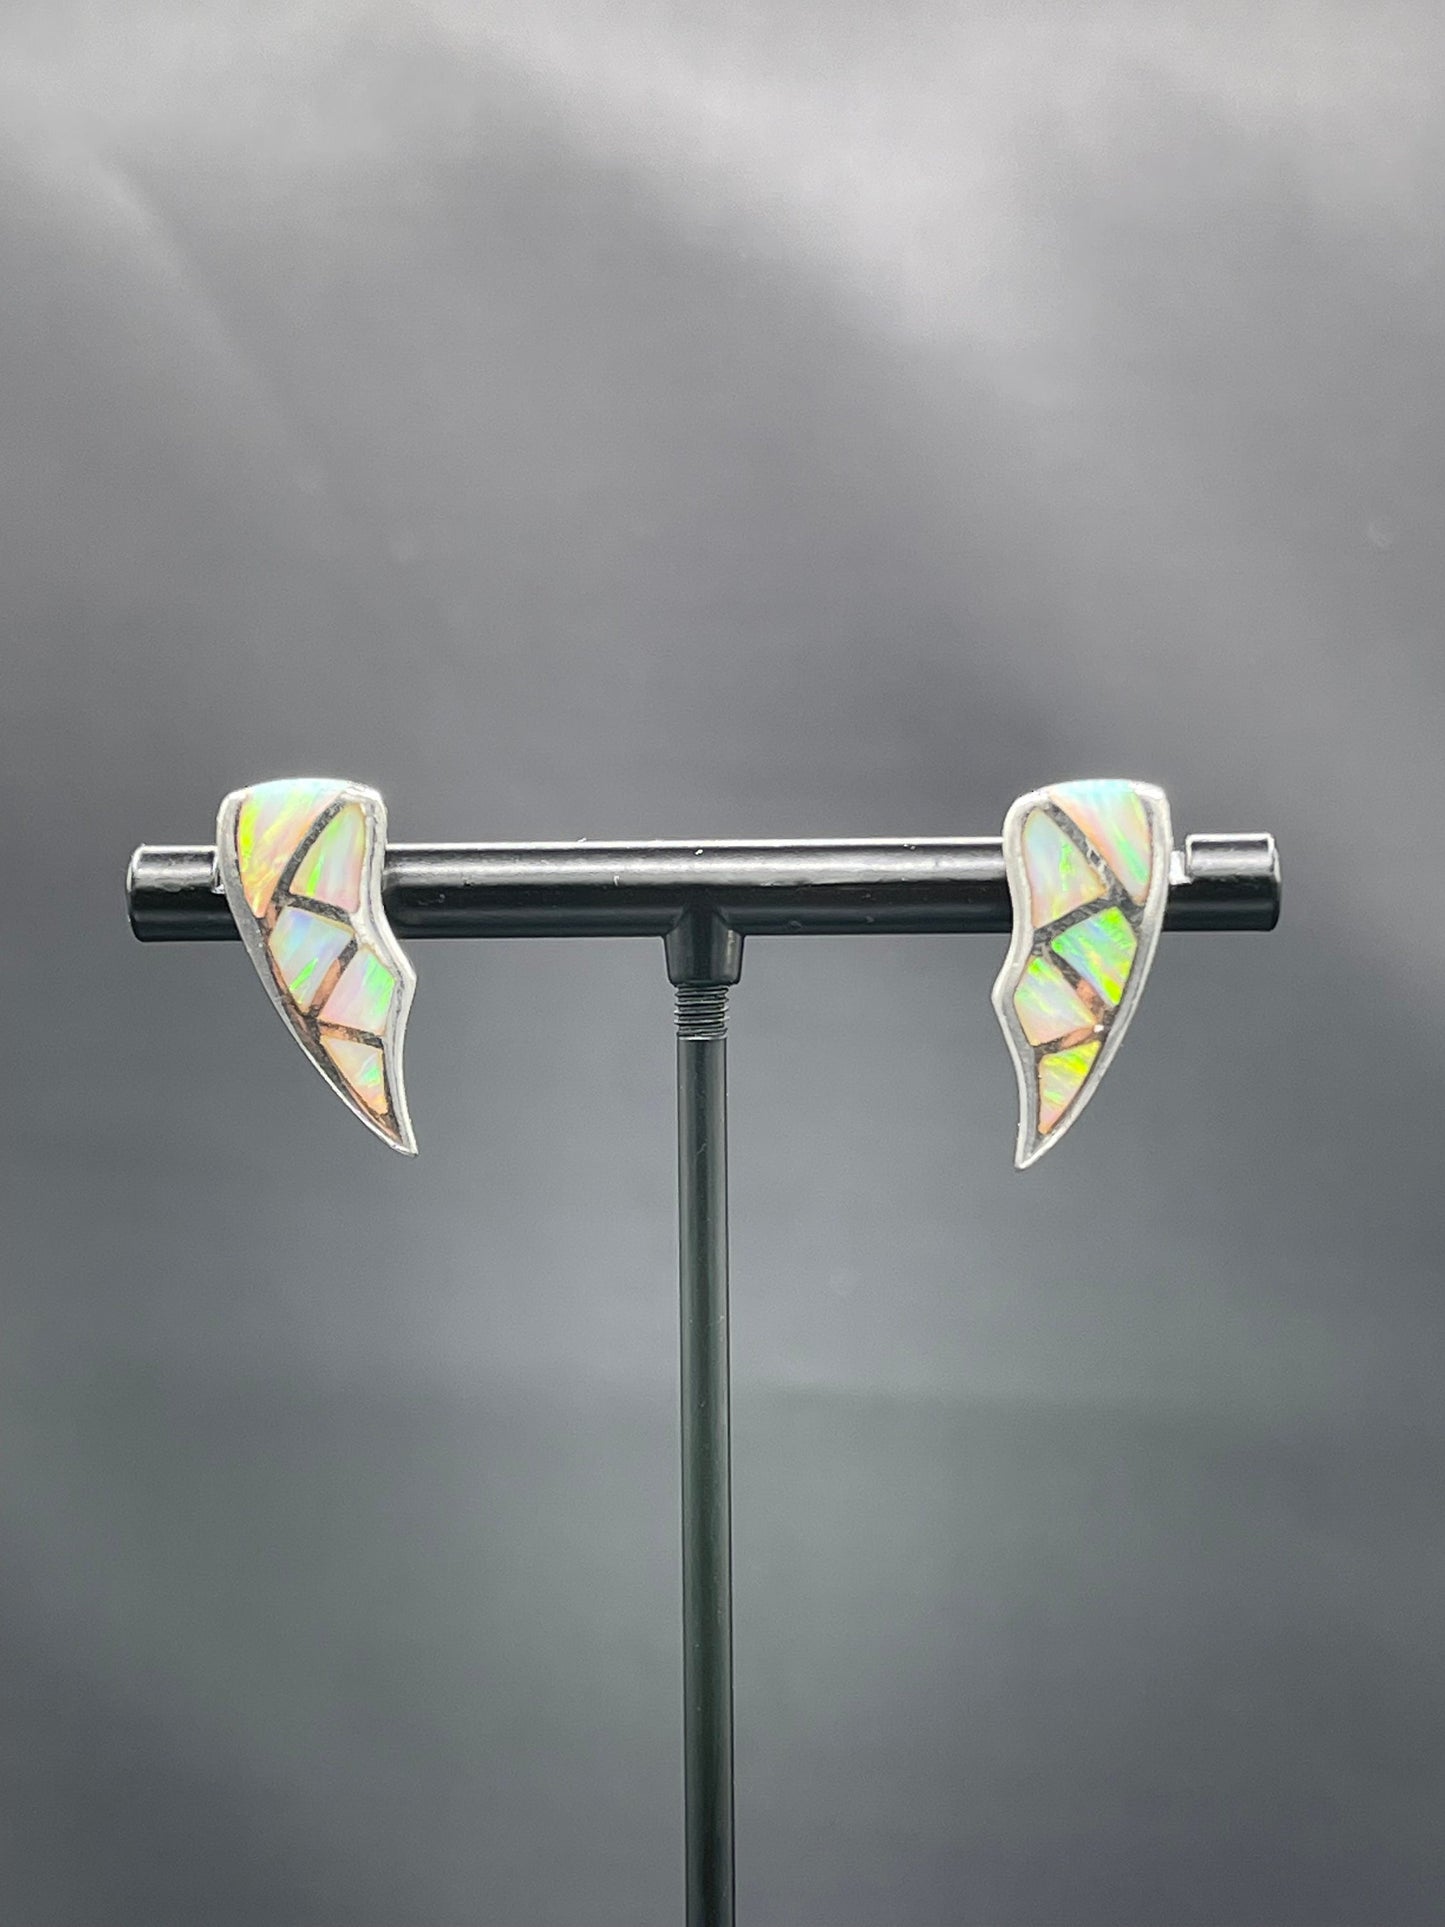 Inlaid Australian Opal Sterling Silver Earrings